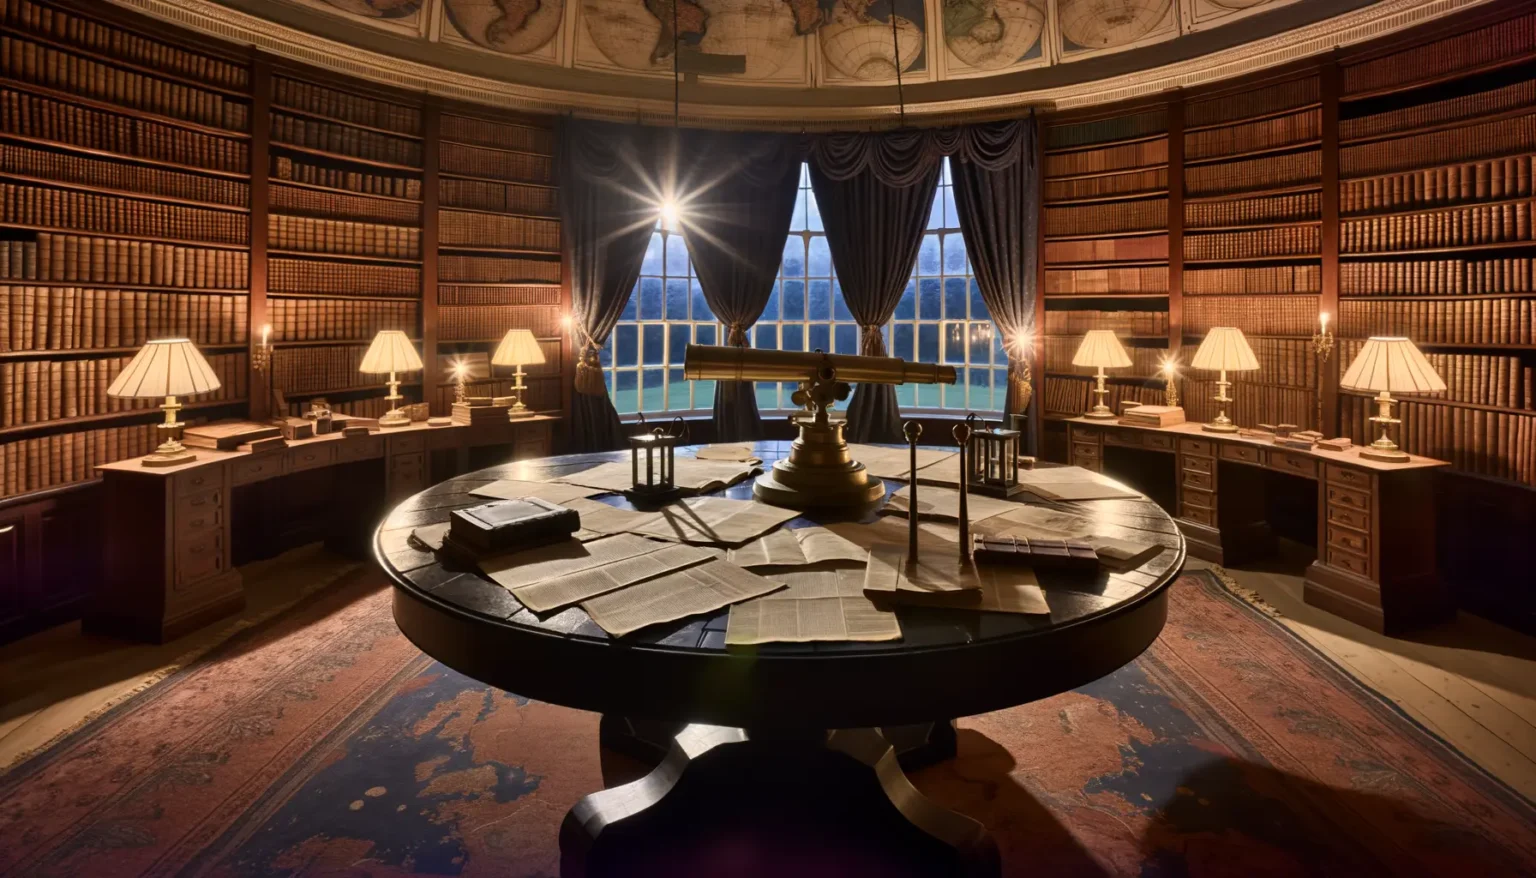 Eine klassisch eingerichtete Bibliothek mit hohen Bücherregalen, die mit zahlreichen Büchern gefüllt sind. In der Mitte des Raumes steht ein großer runder Tisch, darauf ausgebreitete Bücher und Dokumente. Mehrere Tischlampen spenden warmes Licht, und durch die großen Fenster mit schweren Vorhängen fällt Sonnenlicht herein, das am Boden und den Möbeln sternenförmige Reflexionen erzeugt. Über den Regalen sind dekorative alte Weltkarten zu sehen, und der Raum strahlt eine stille, akademische Atmosphäre aus.